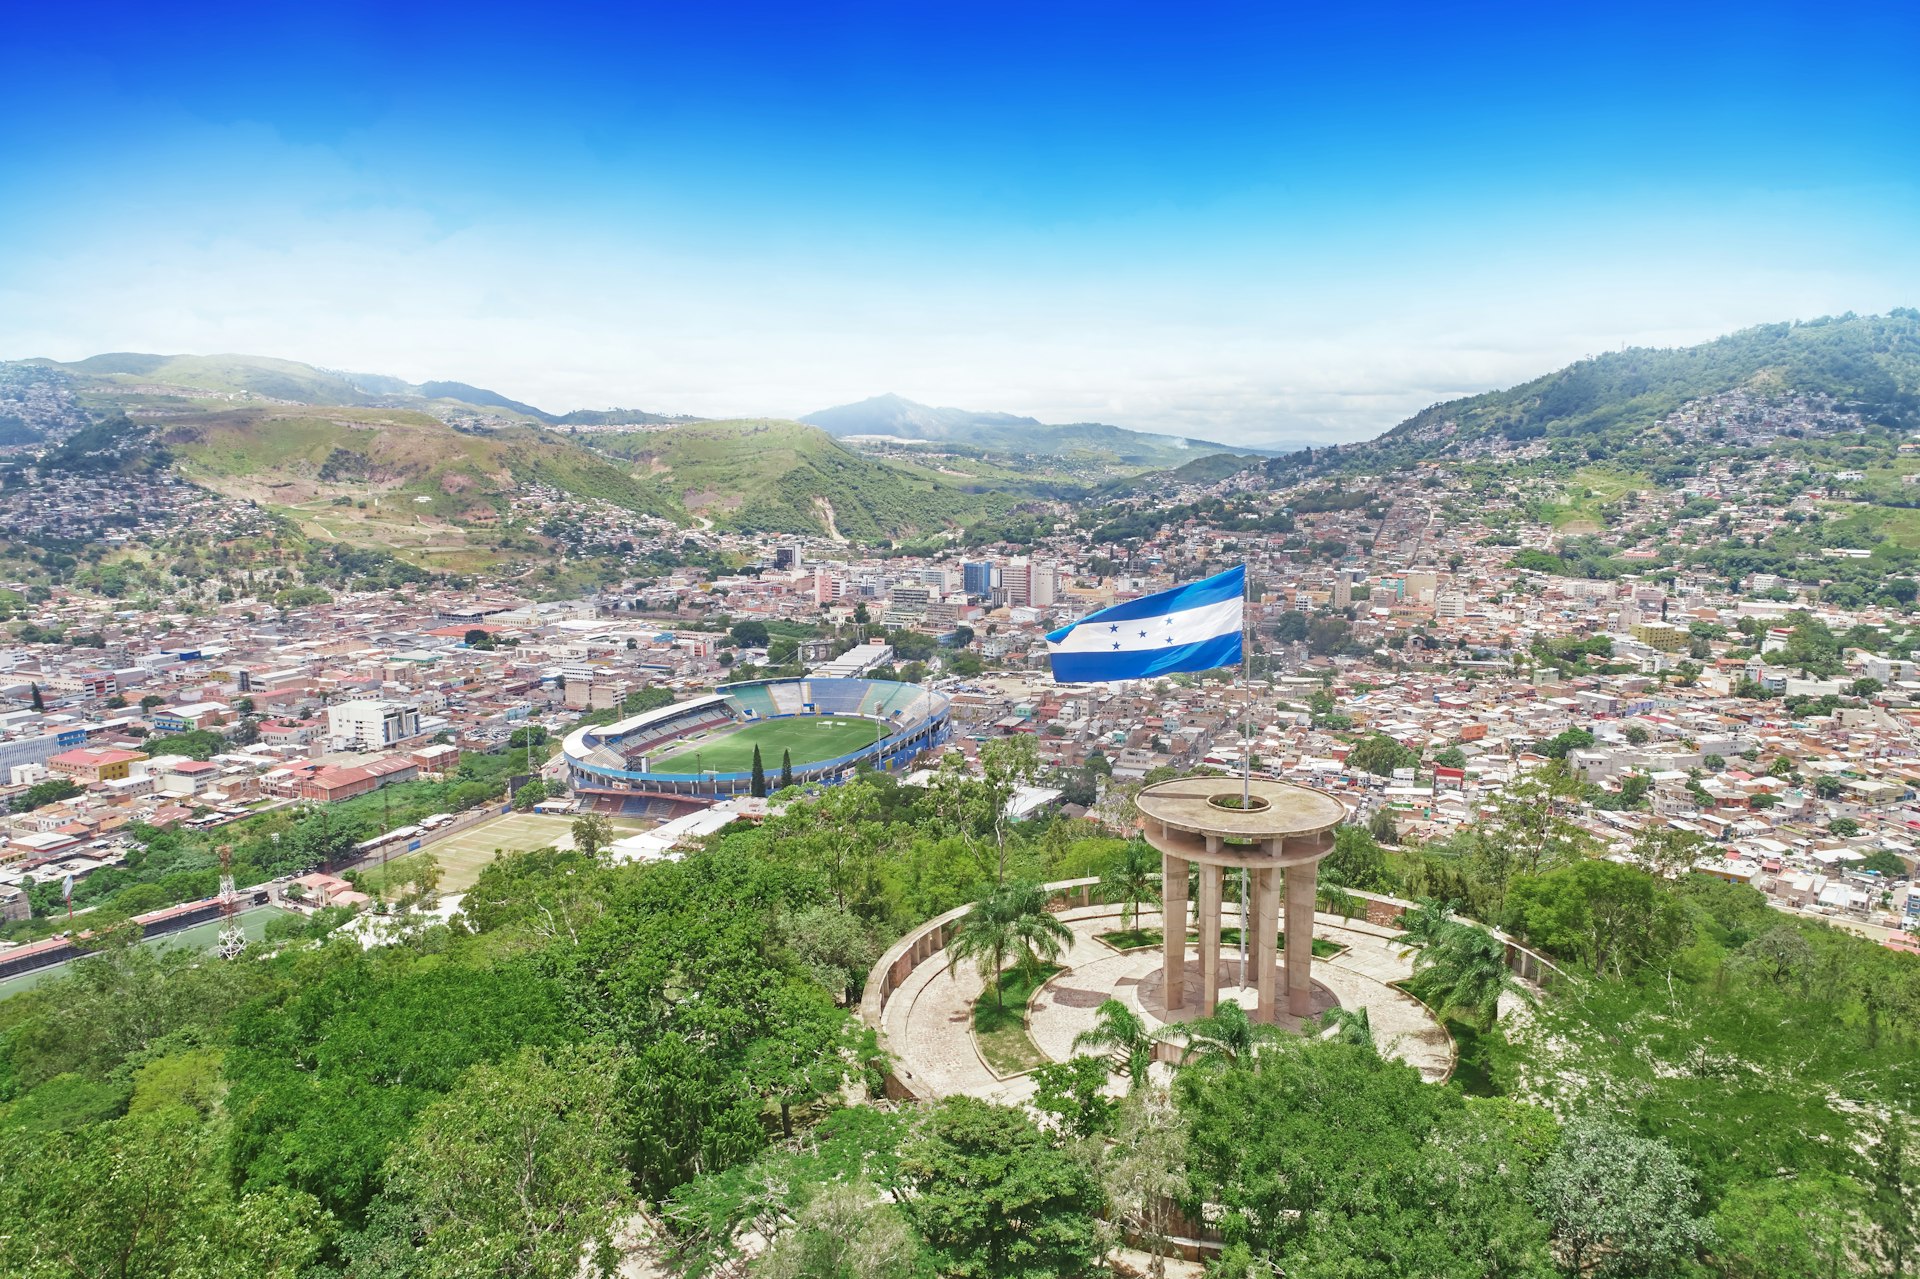 A view over Tegucigalpa, the capital of Honduras